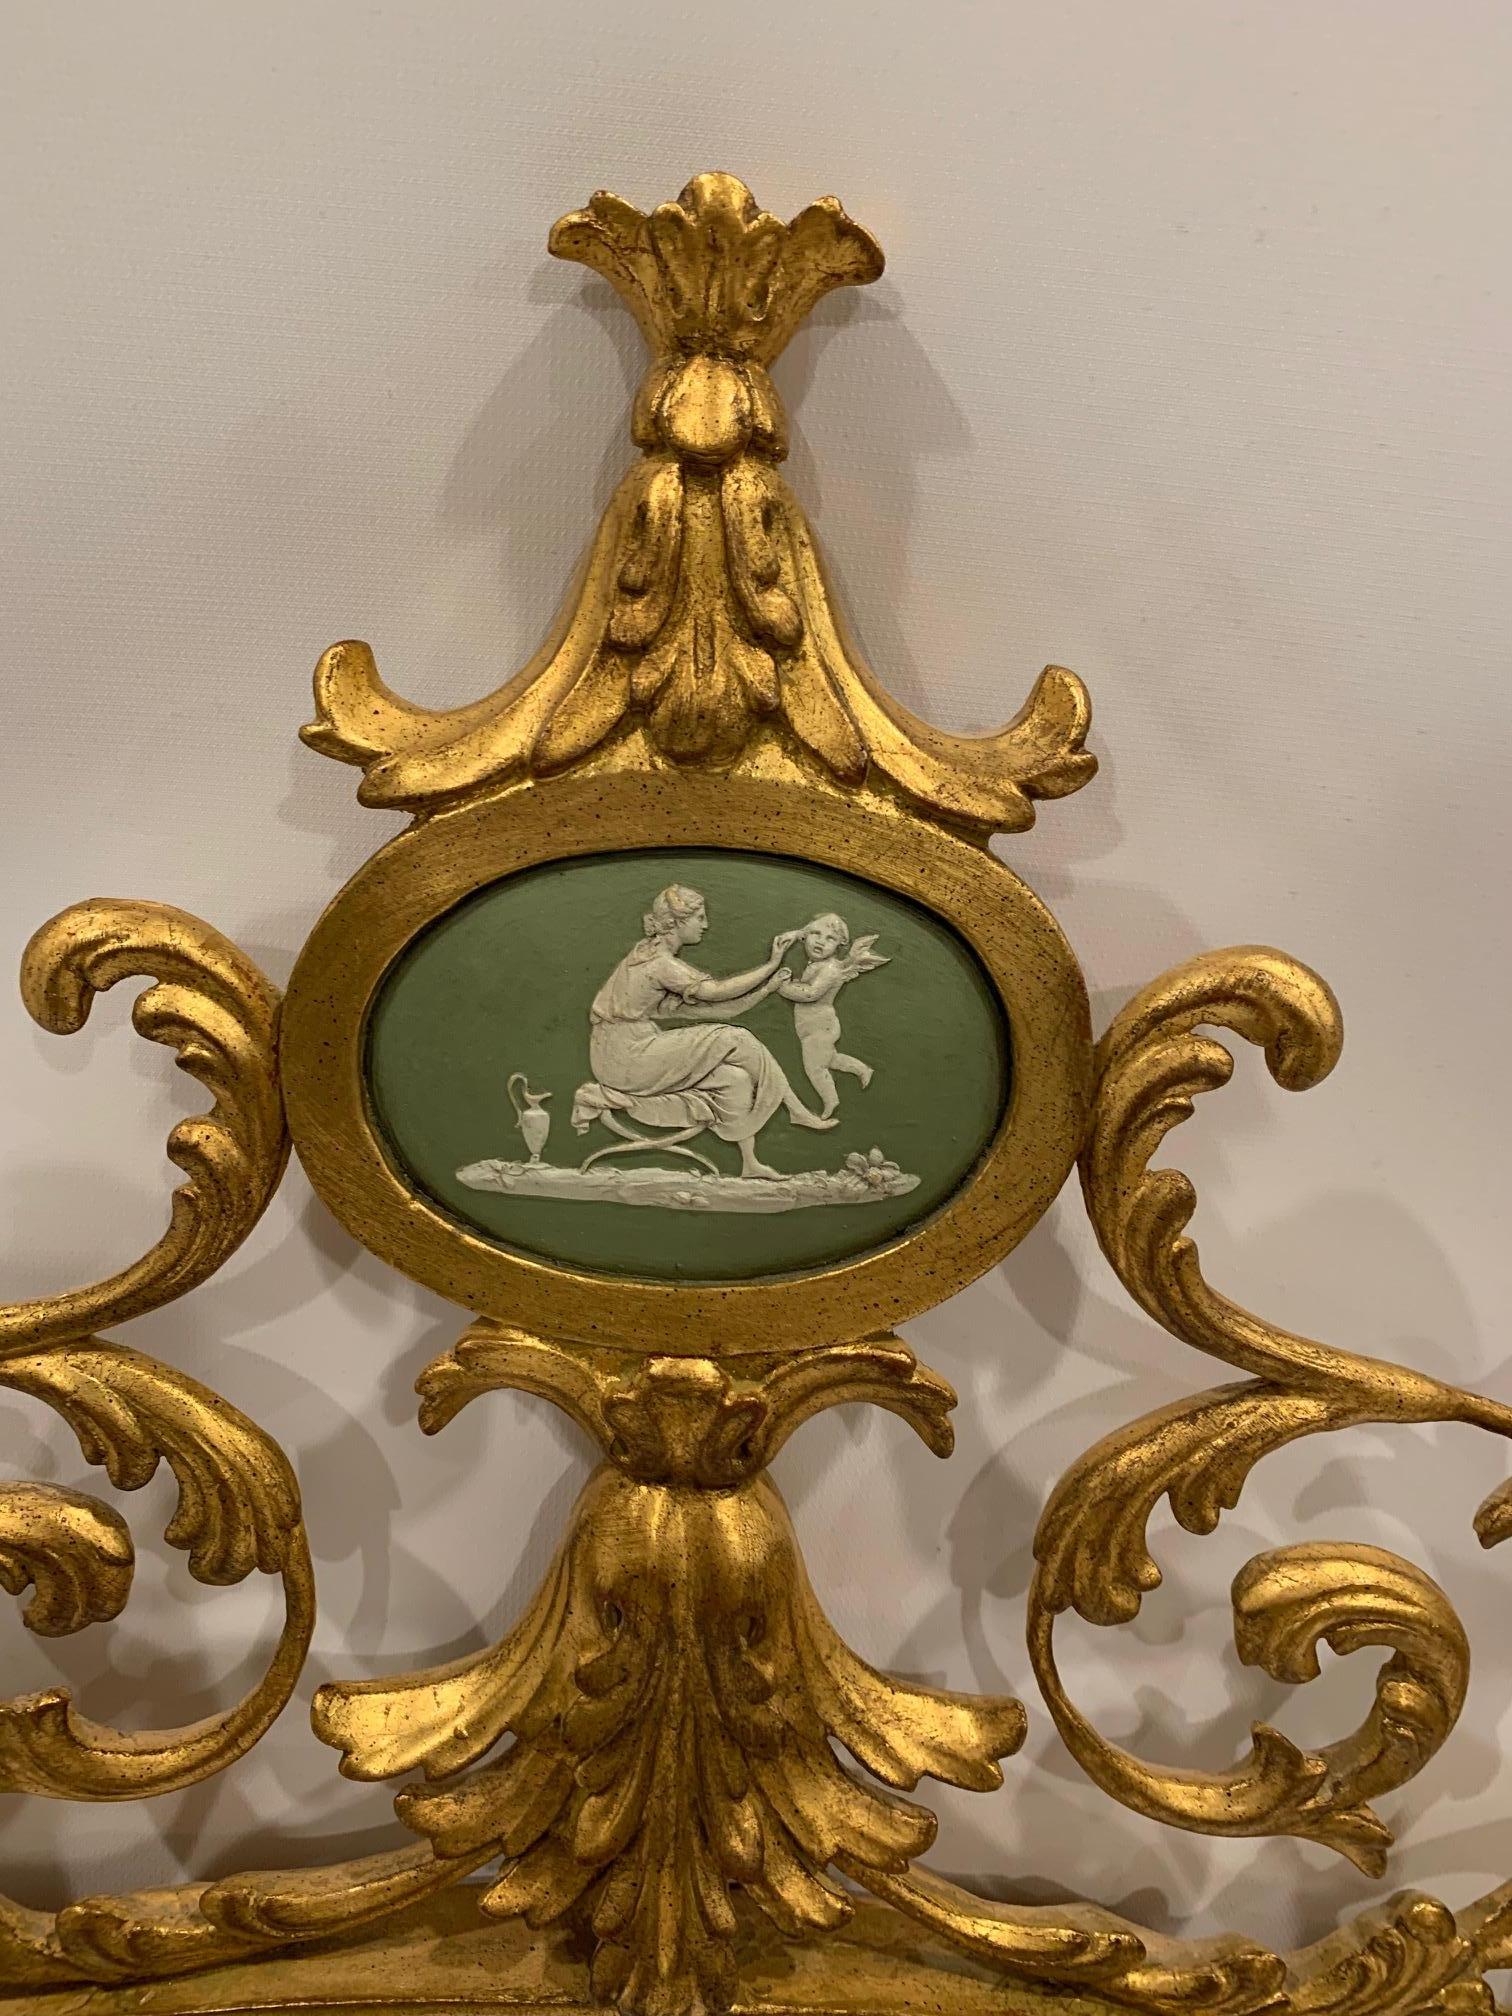 Romantischer ovaler Vergoldungsspiegel mit ausgefallenen Schnörkeln, abgeschrägtem Spiegel und wunderschönem grün- und cremefarbenem Wedgewood-Kameenmedaillon im oberen Bereich. Der Spiegel ist 26,5 x 16,75.